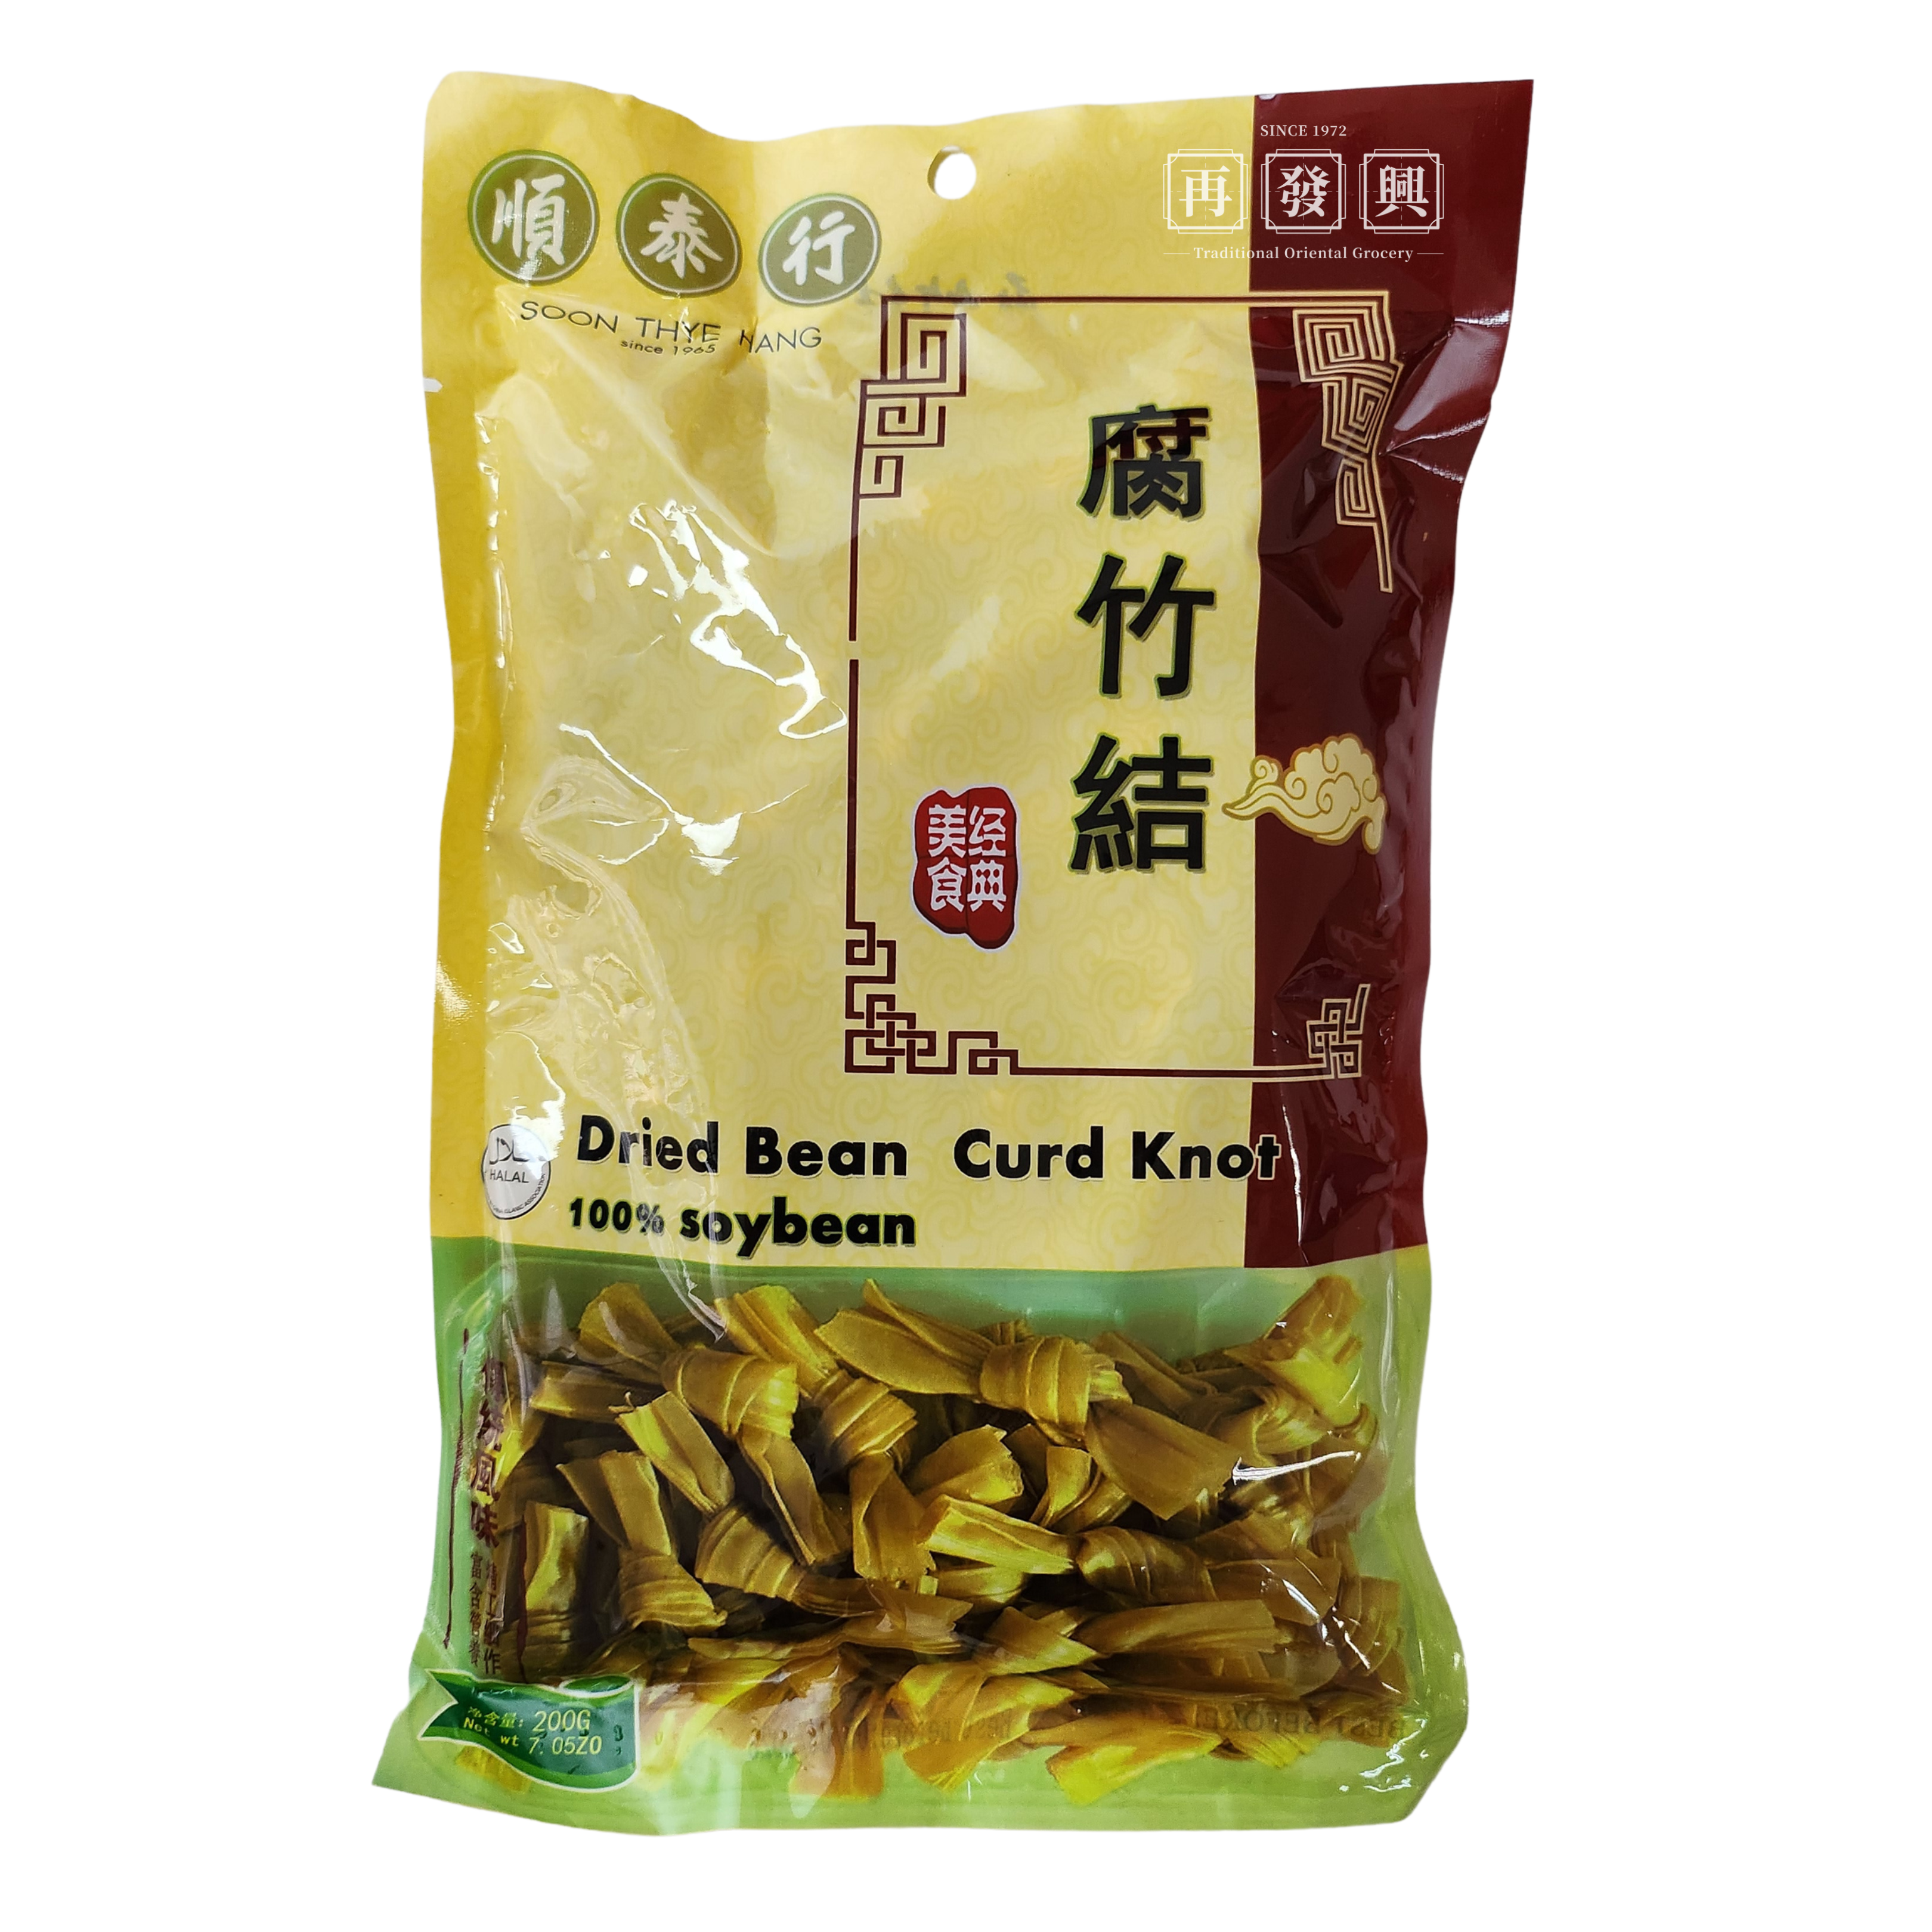 STH Dried Bean Curd Knot (100% Soybean) 腐竹结 200g